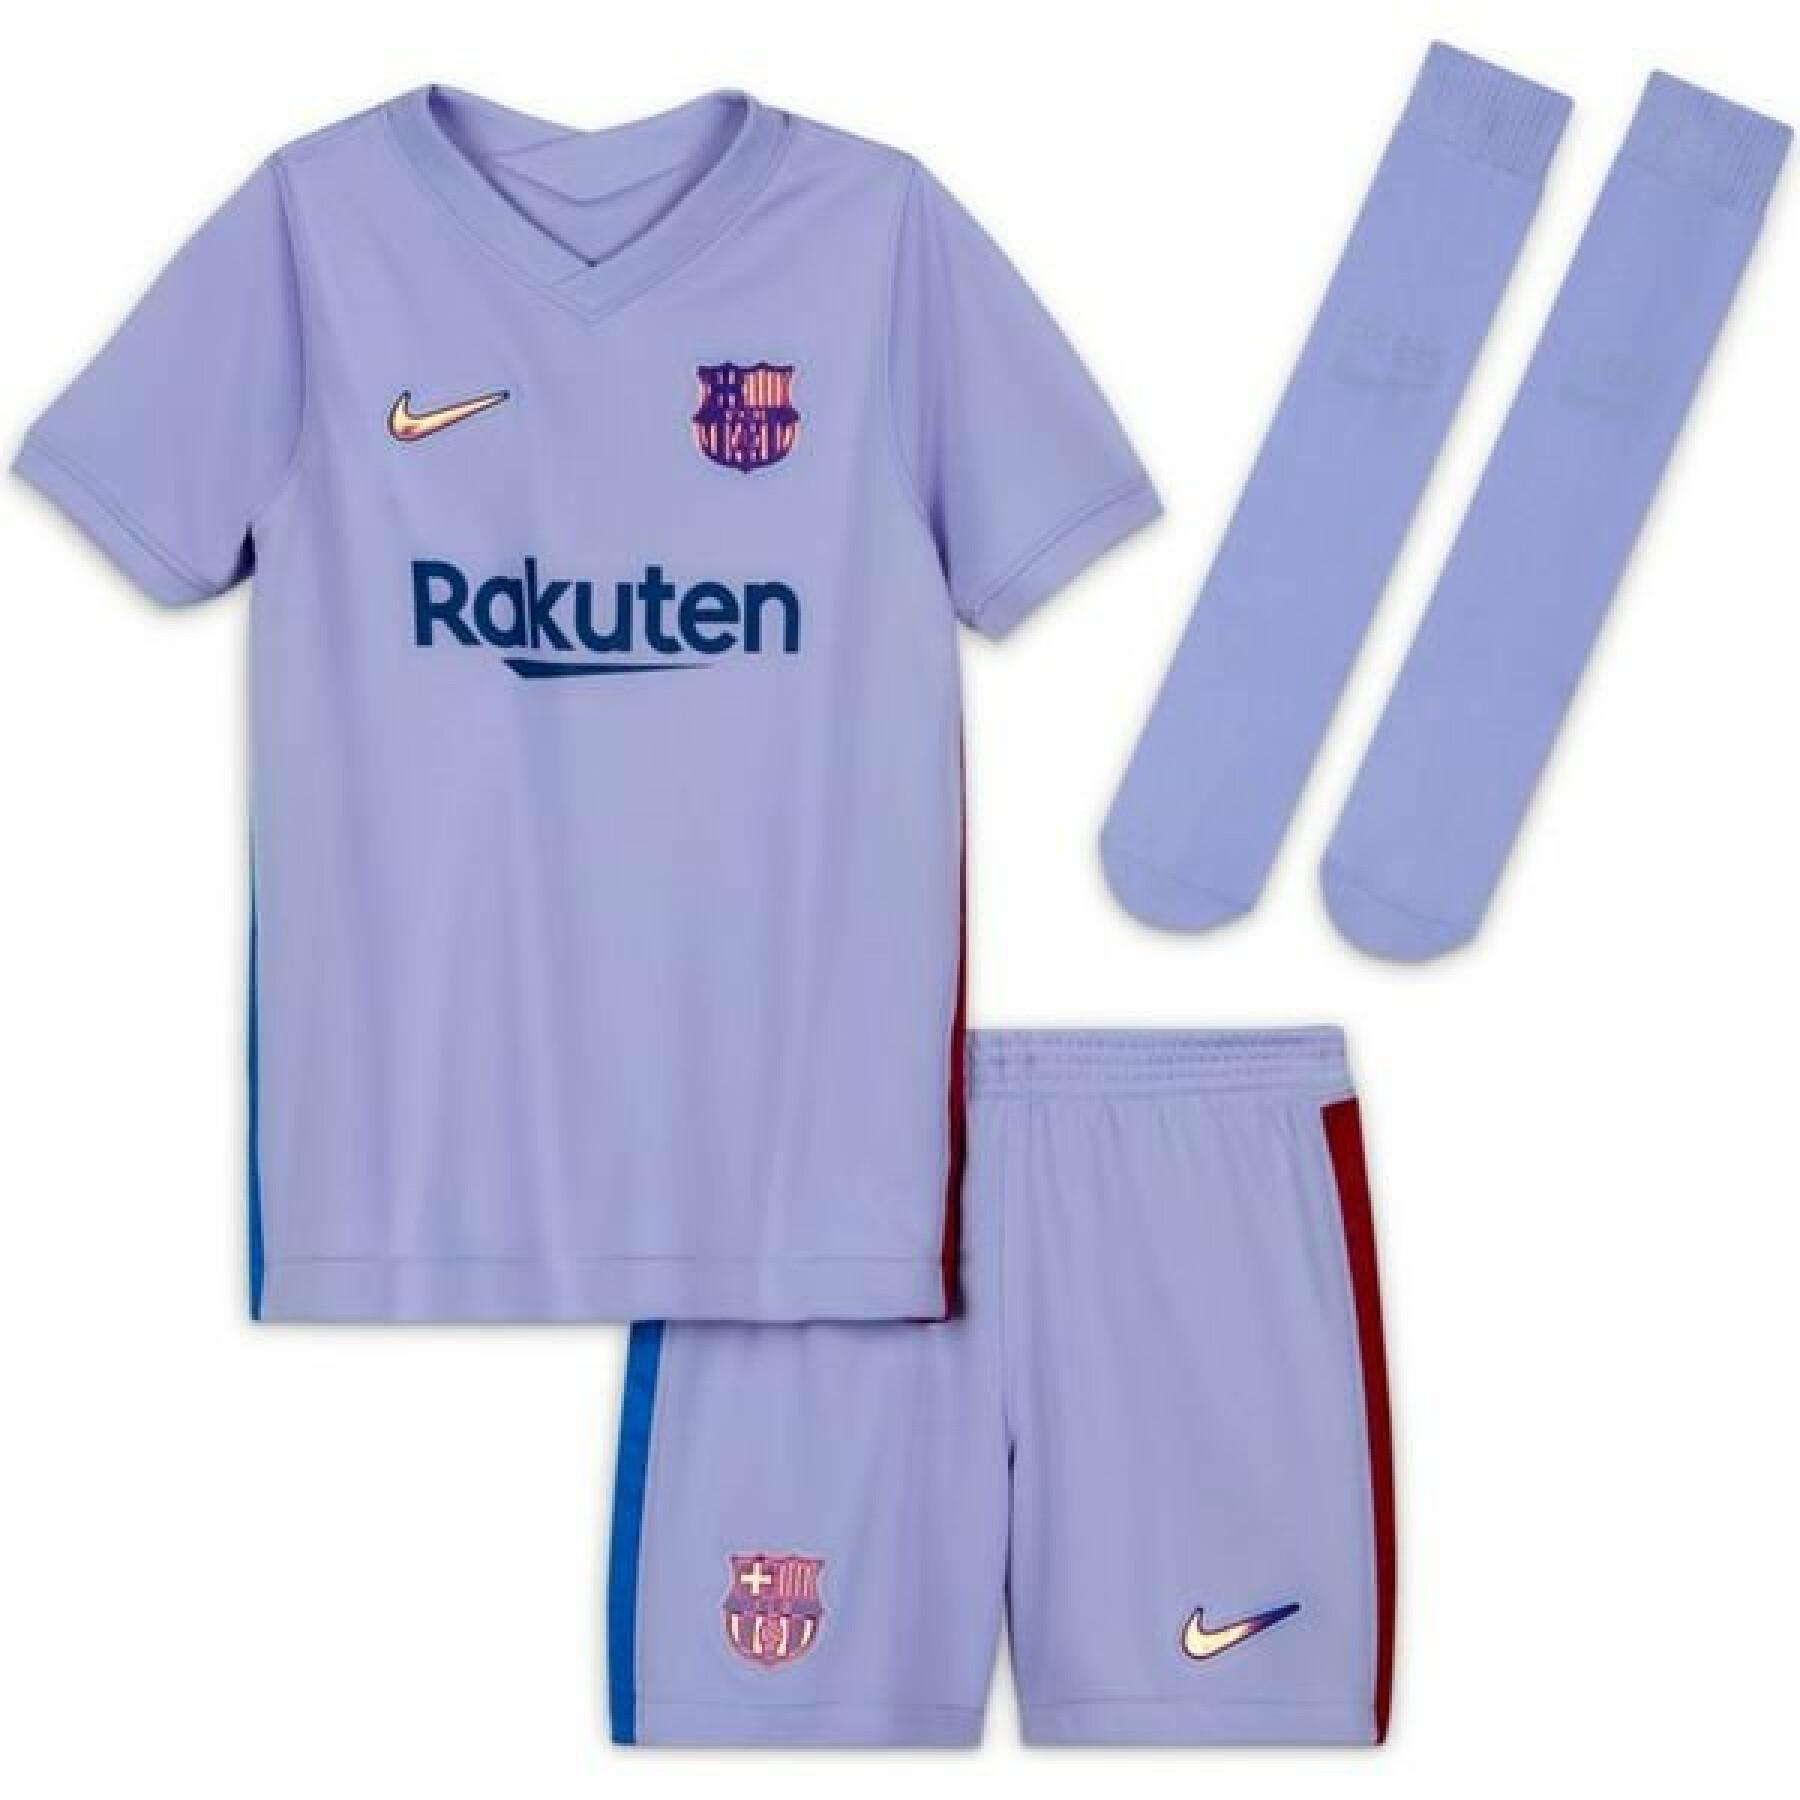 Mini kit all'aperto per bambini FC Barcelone 2021/22